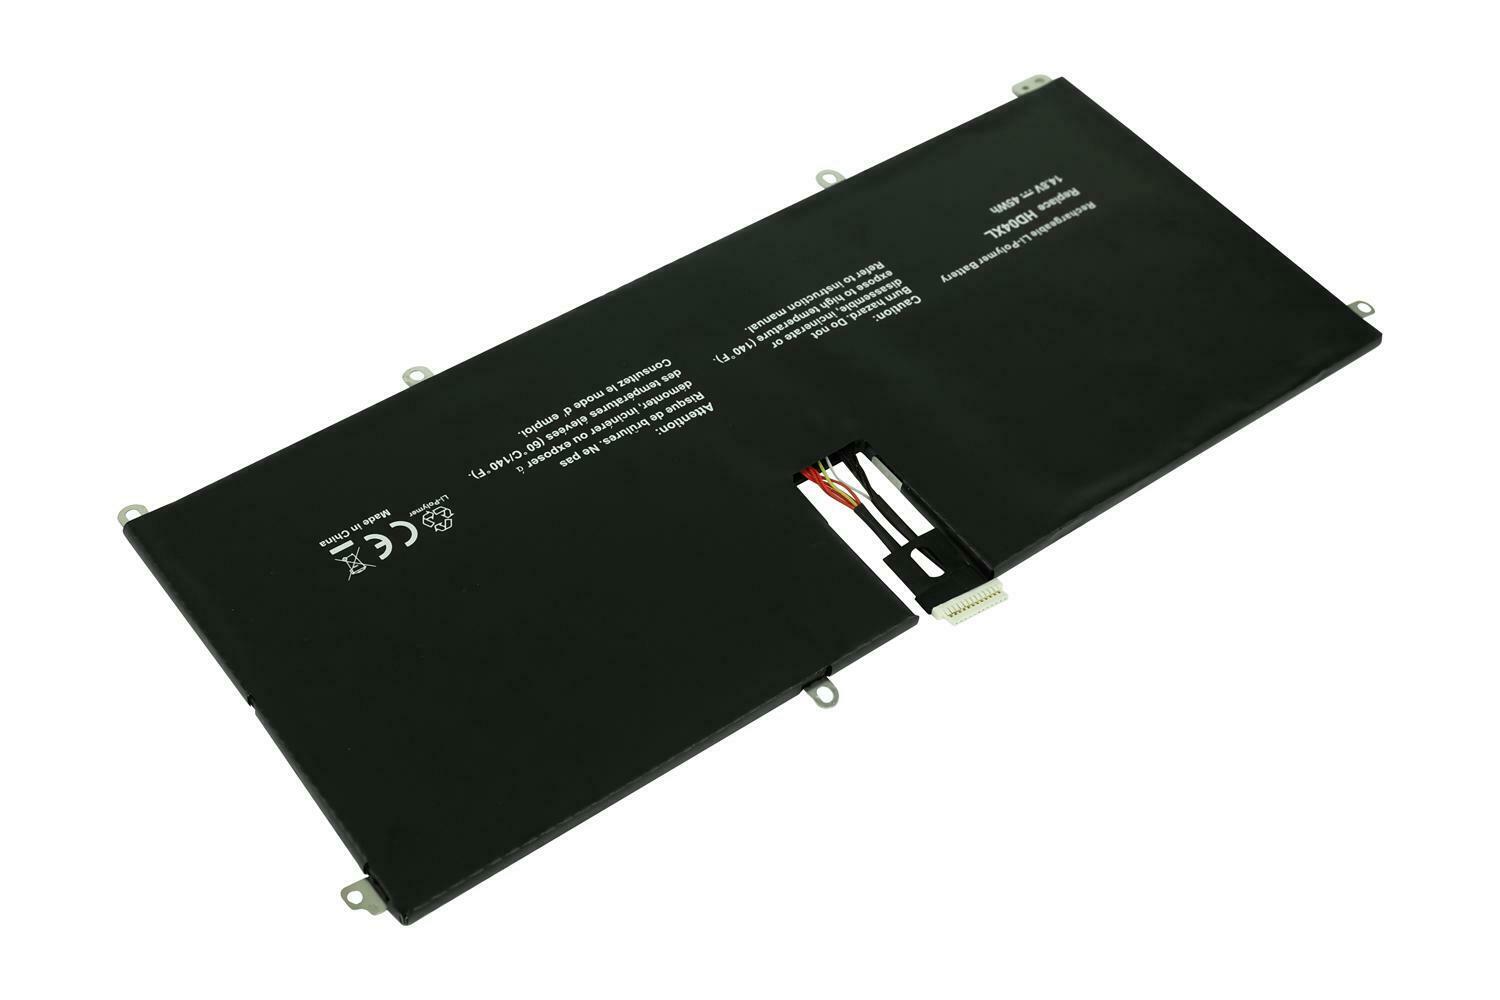 HD04XL HSTNN-IB3V 685989-001 HP SPECTRE XT 13 B000 2113TU 2023TU kompatibelt batterier - Trykk på bildet for å lukke